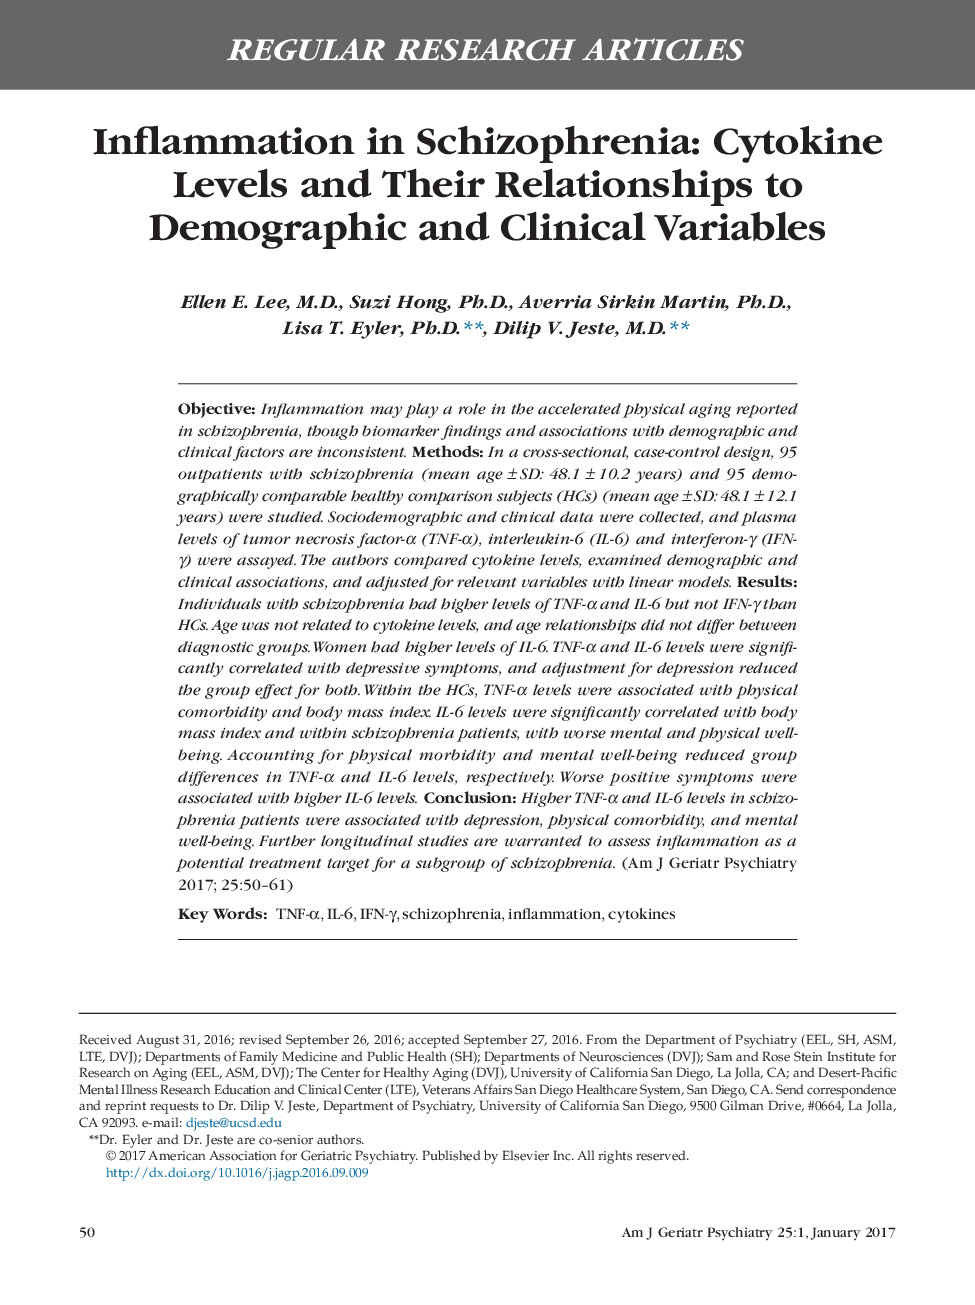 مقالات پژوهشی منظم در بیماری اسکیزوفرنی: سطوح سیتوکین و ارتباط آنها با متغیرهای دموگرافیک و بالینی 